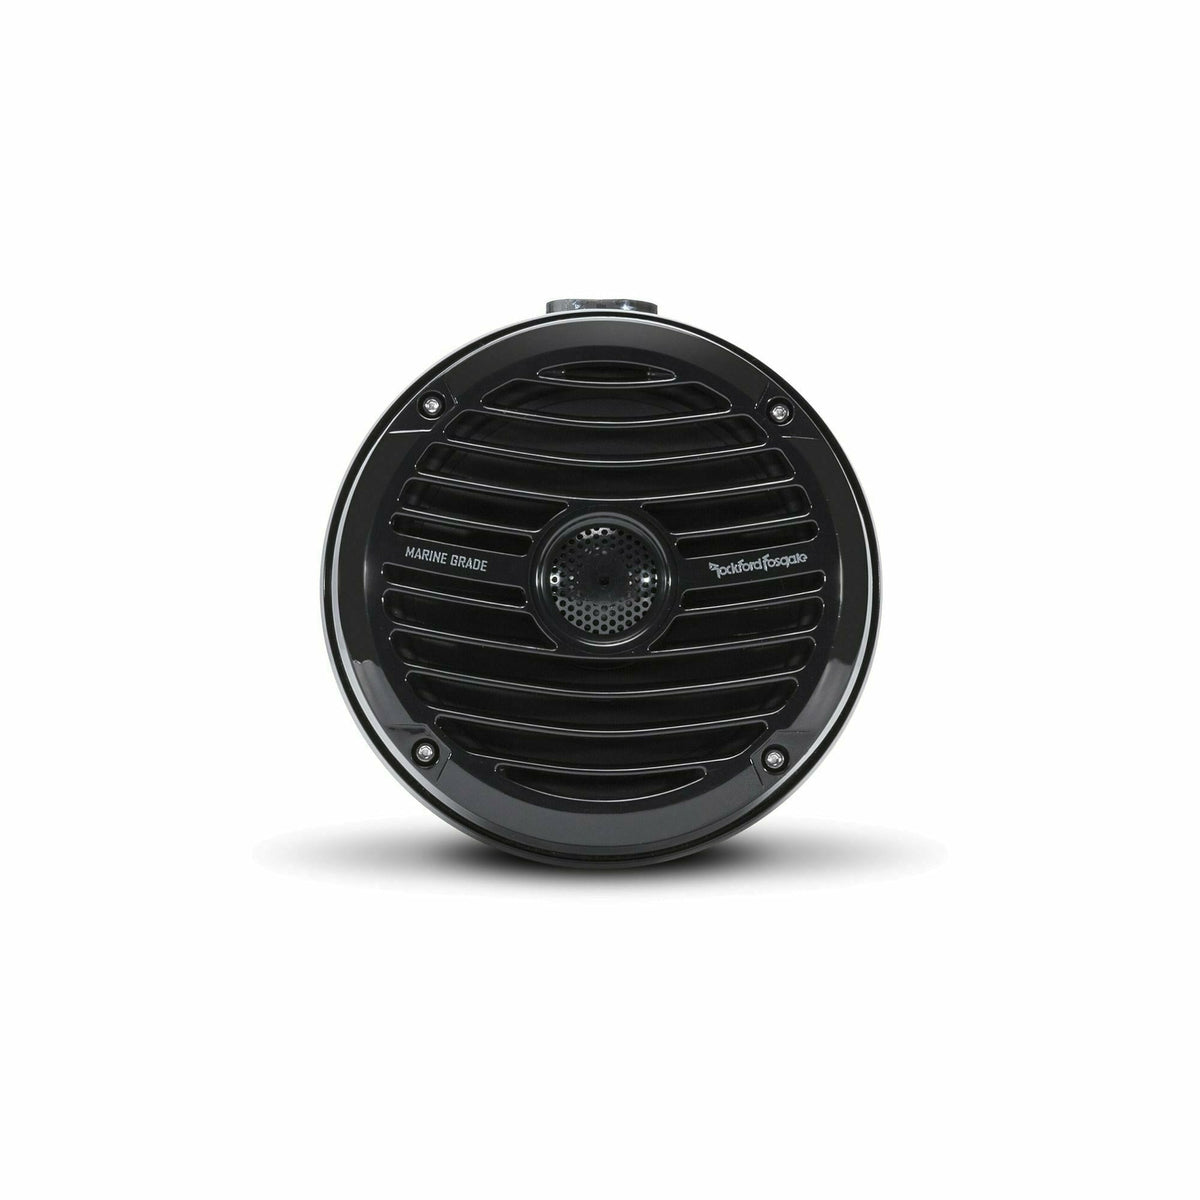 Rockford Fosgate Prime 6.5" Mini Can Speaker